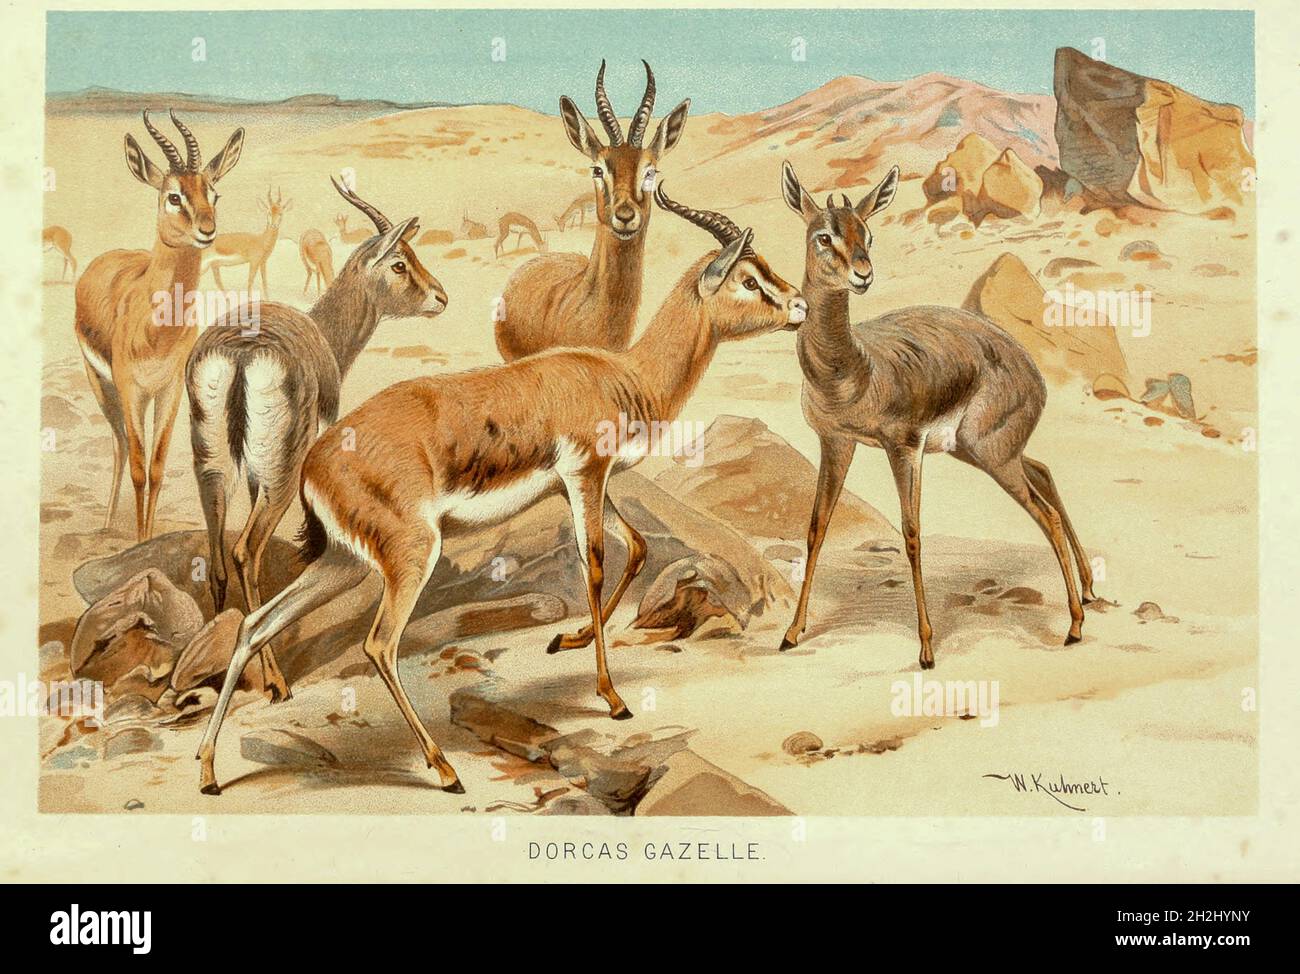 dorcas gazelle (Gazella dorcas) anche noto come ariel gazelle, è una piccola e comune gazelle. La gazzella dorcas si trova a circa 55–65 cm (1.8–2.1 piedi) dalla spalla, con una lunghezza della testa e del corpo di 90–110 cm (3–3.5 piedi) e un peso di 15–20 kg (33–44 libbre). Le numerose sottospecie sopravvivono sulla vegetazione in praterie, steppe, wadi, deserto di montagna e nei climi semidesert dell'Africa e dell'Arabia. Dal libro " Royal Natural History " Volume 2 a cura di Richard Lydekker, pubblicato a Londra da Frederick Warne & Co nel 1893-1894 Foto Stock